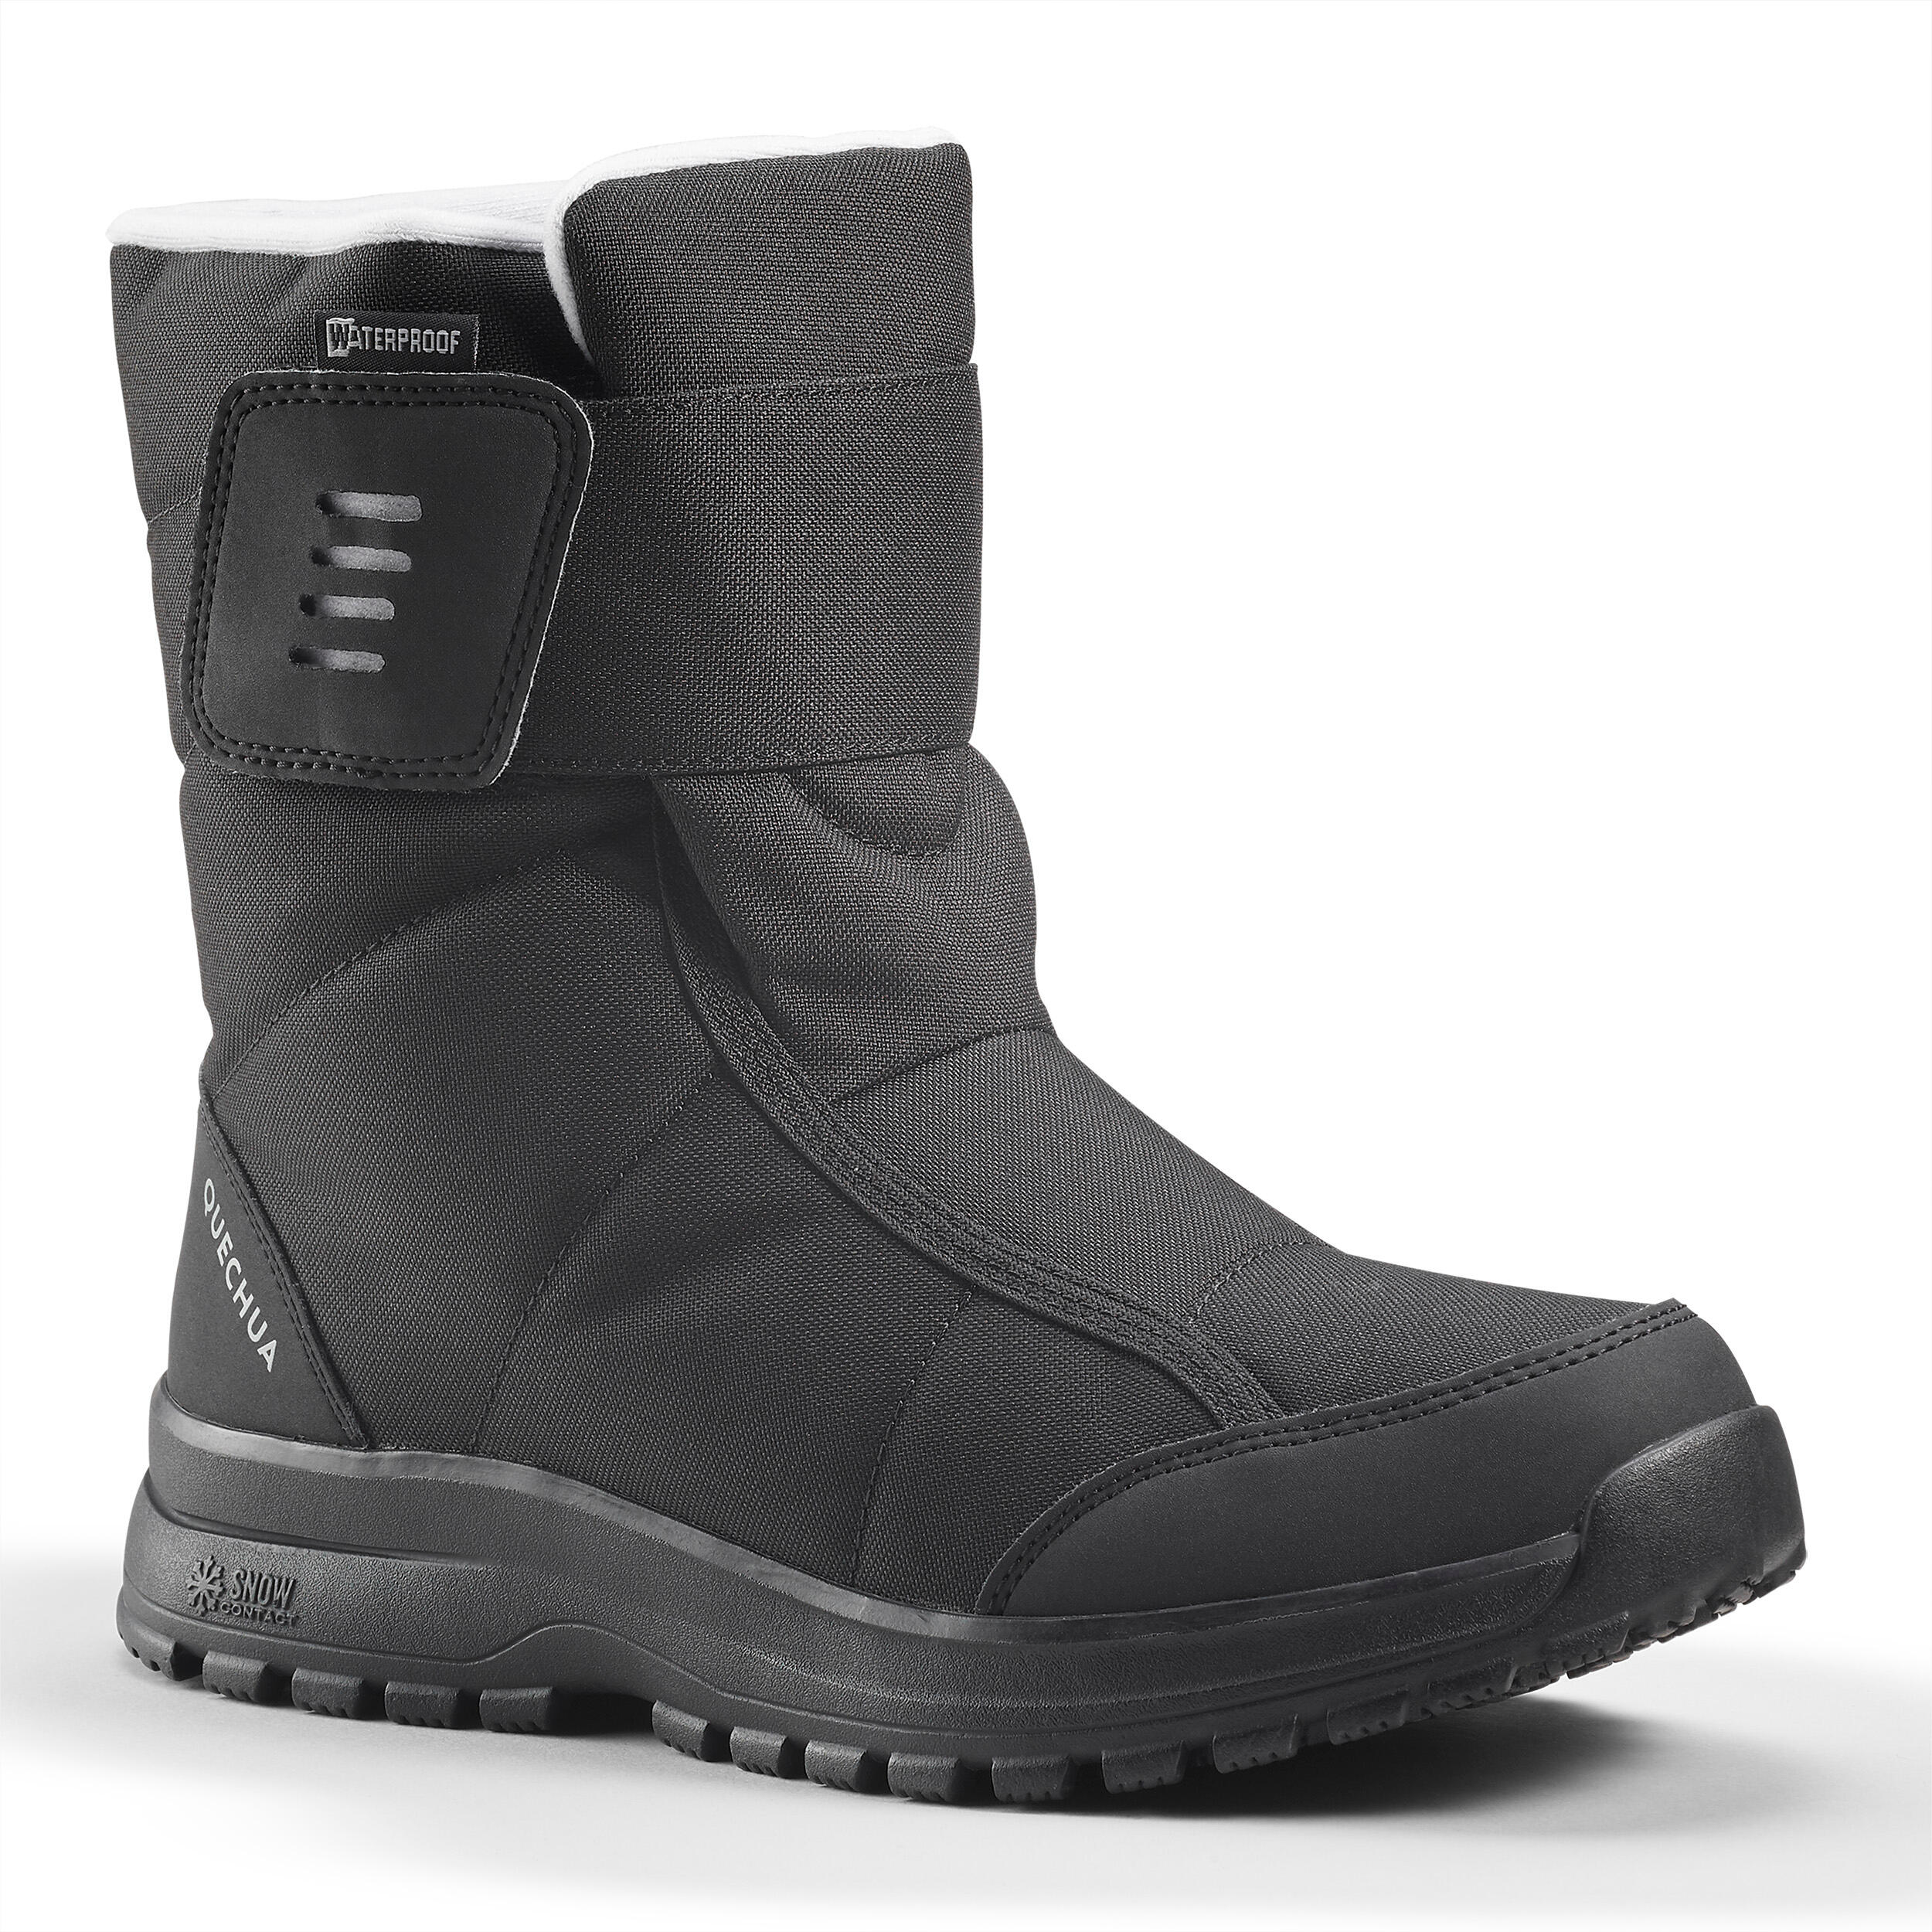 discount 86% WOMEN FASHION Footwear Waterproof Boots Decathlon boots Black 35                  EU 